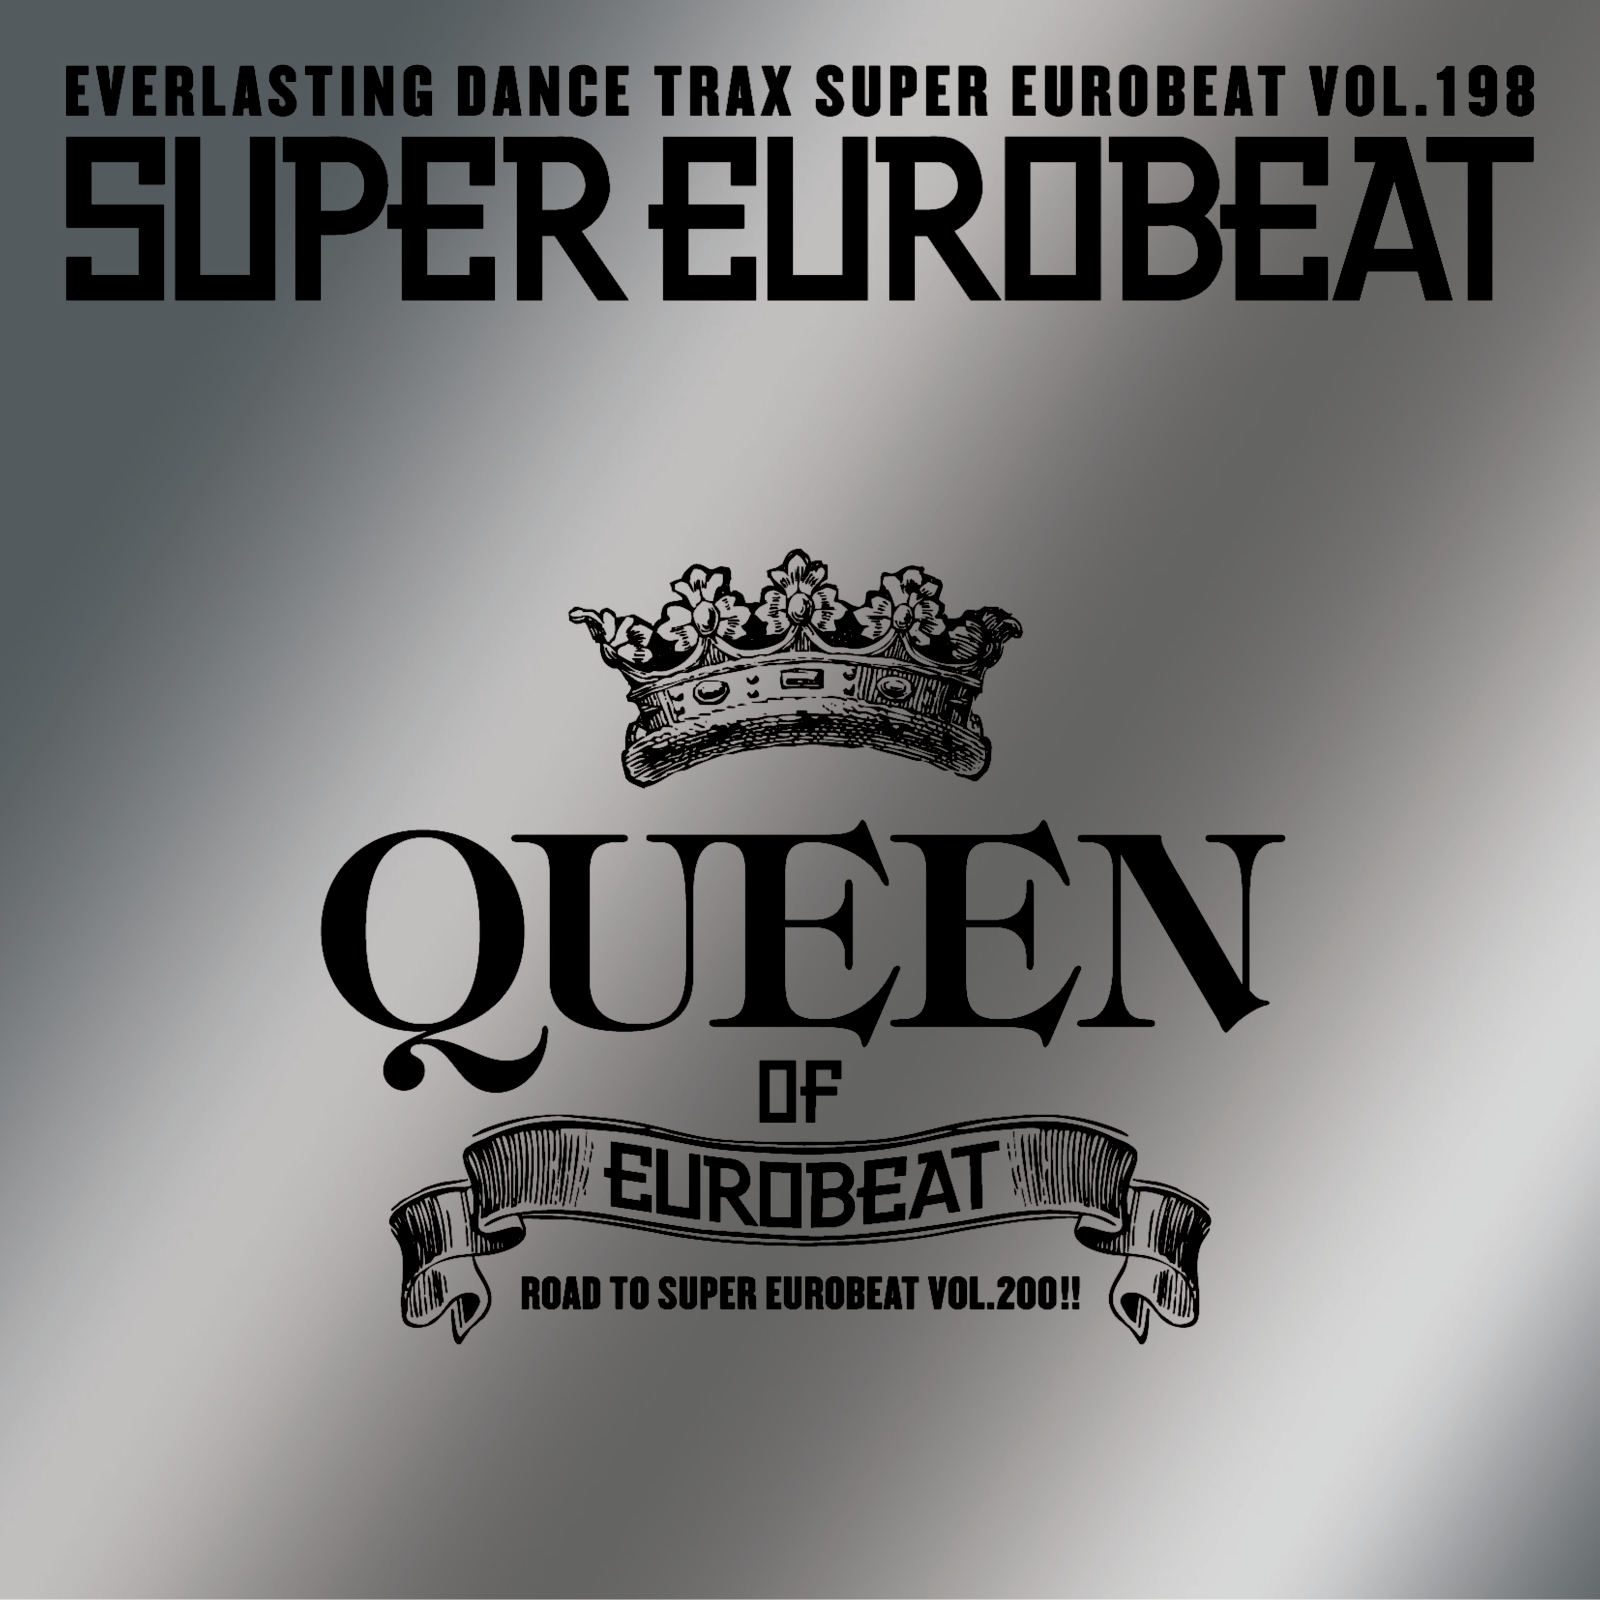 Dancing Queen, Eurobeat Wiki